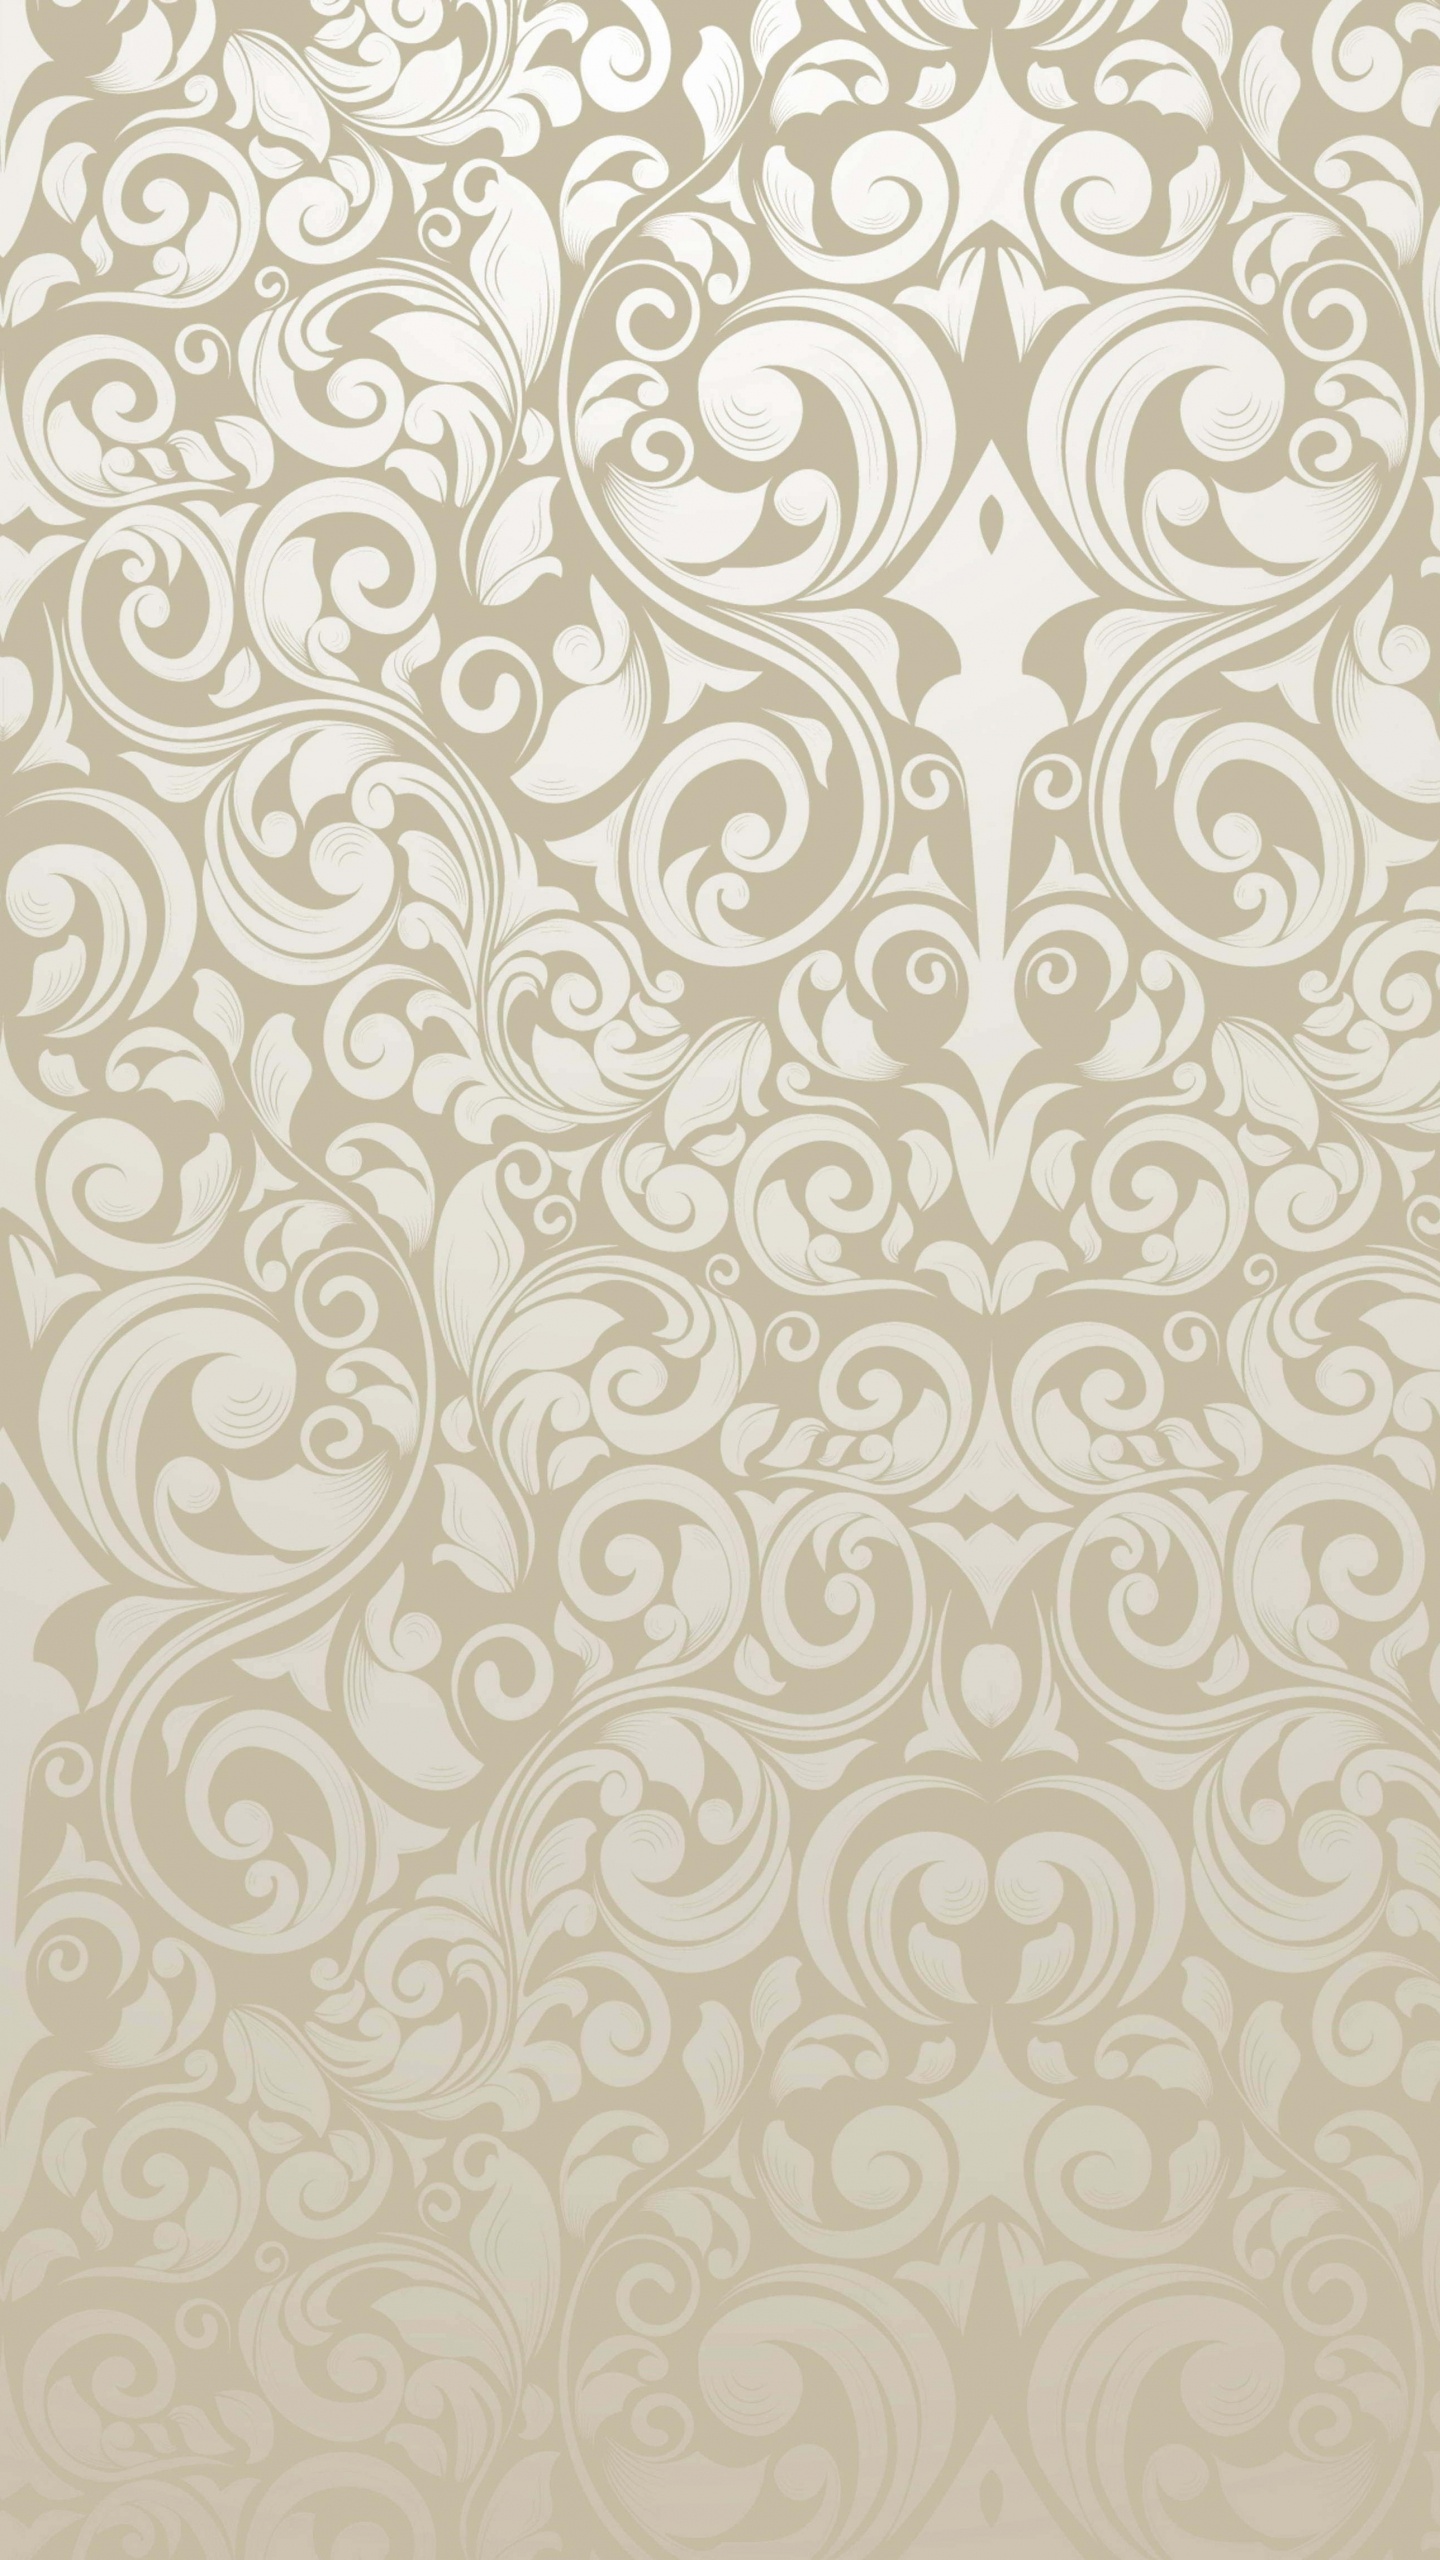 Textile Floral Blanc et Noir. Wallpaper in 1440x2560 Resolution